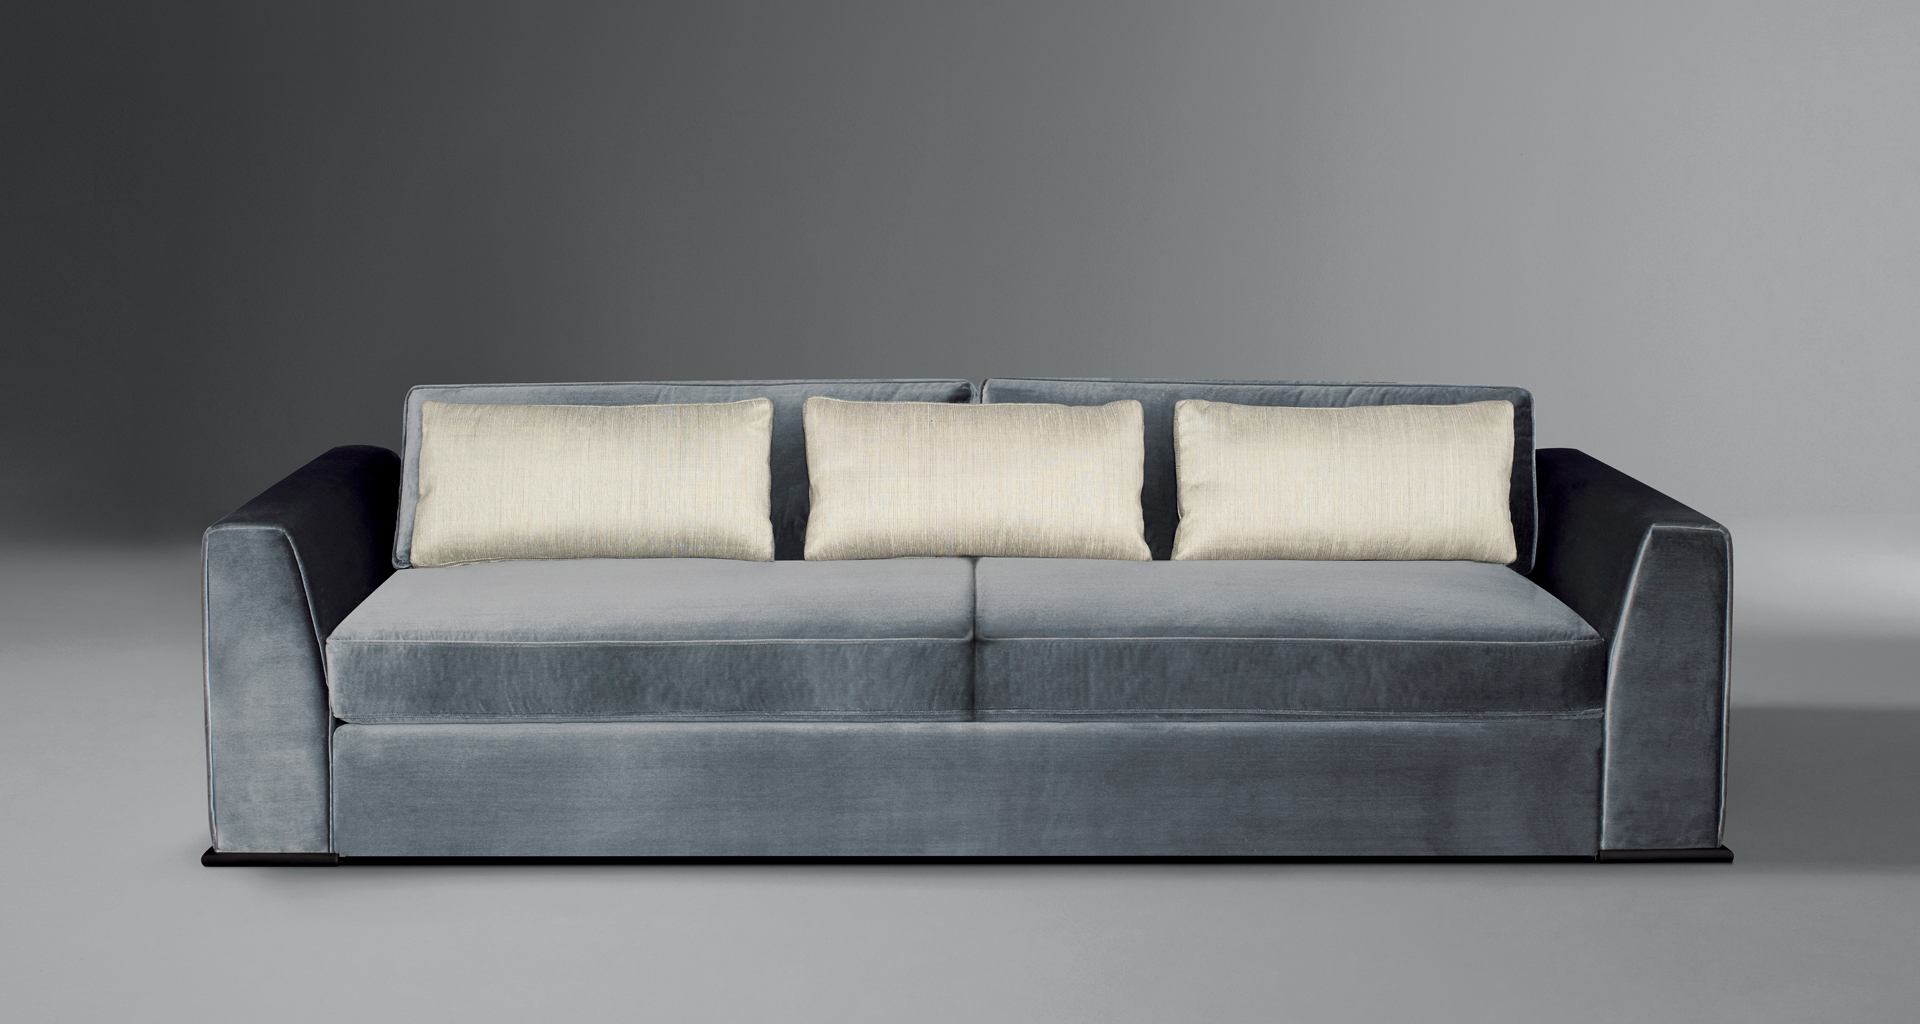 Ulderico è un divano in legno rivestito in tessuto del catalogo di Promemoria | Promemoria